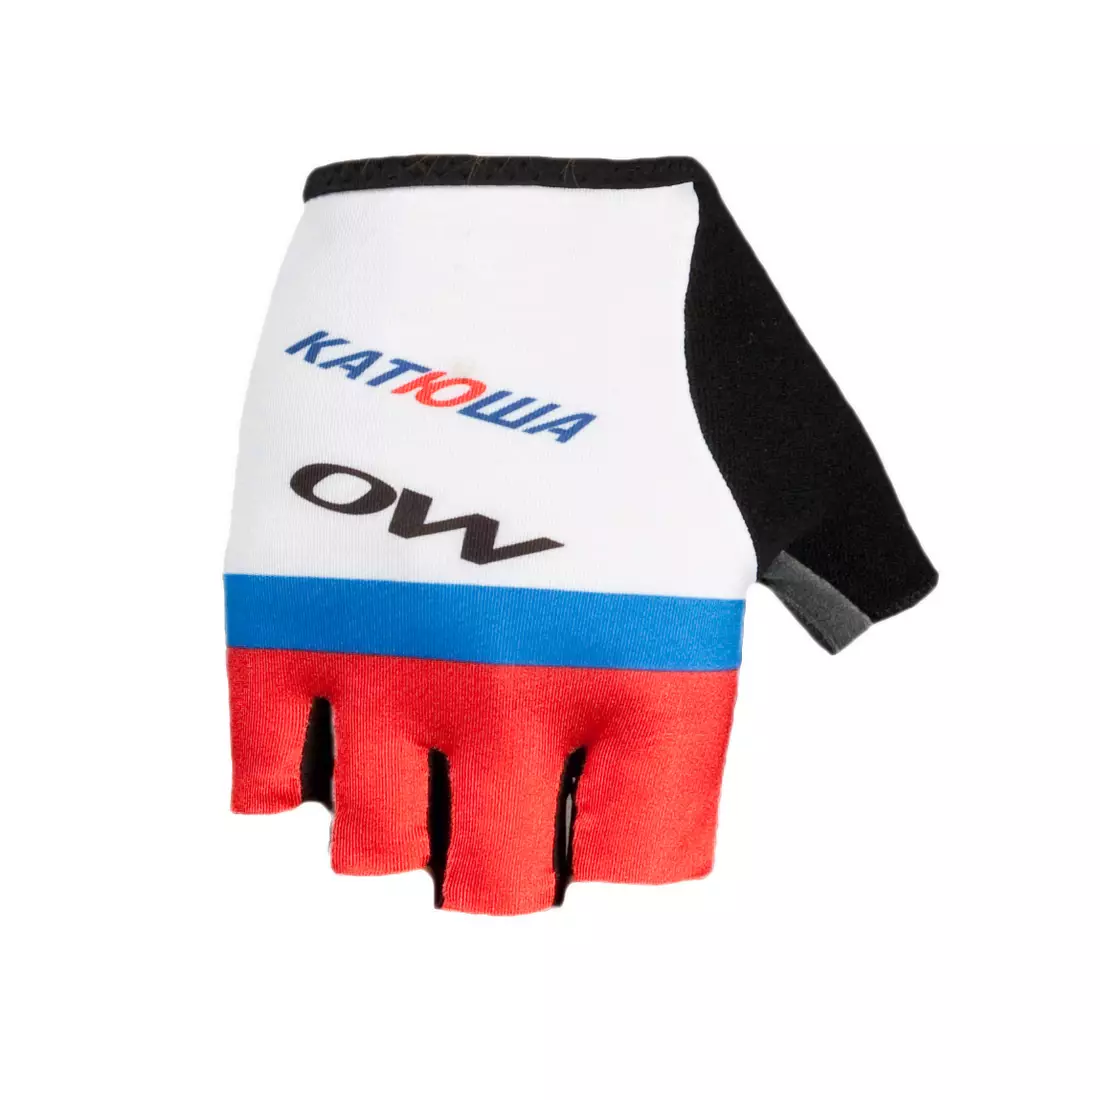 KATUSHA 2015 cycling gloves